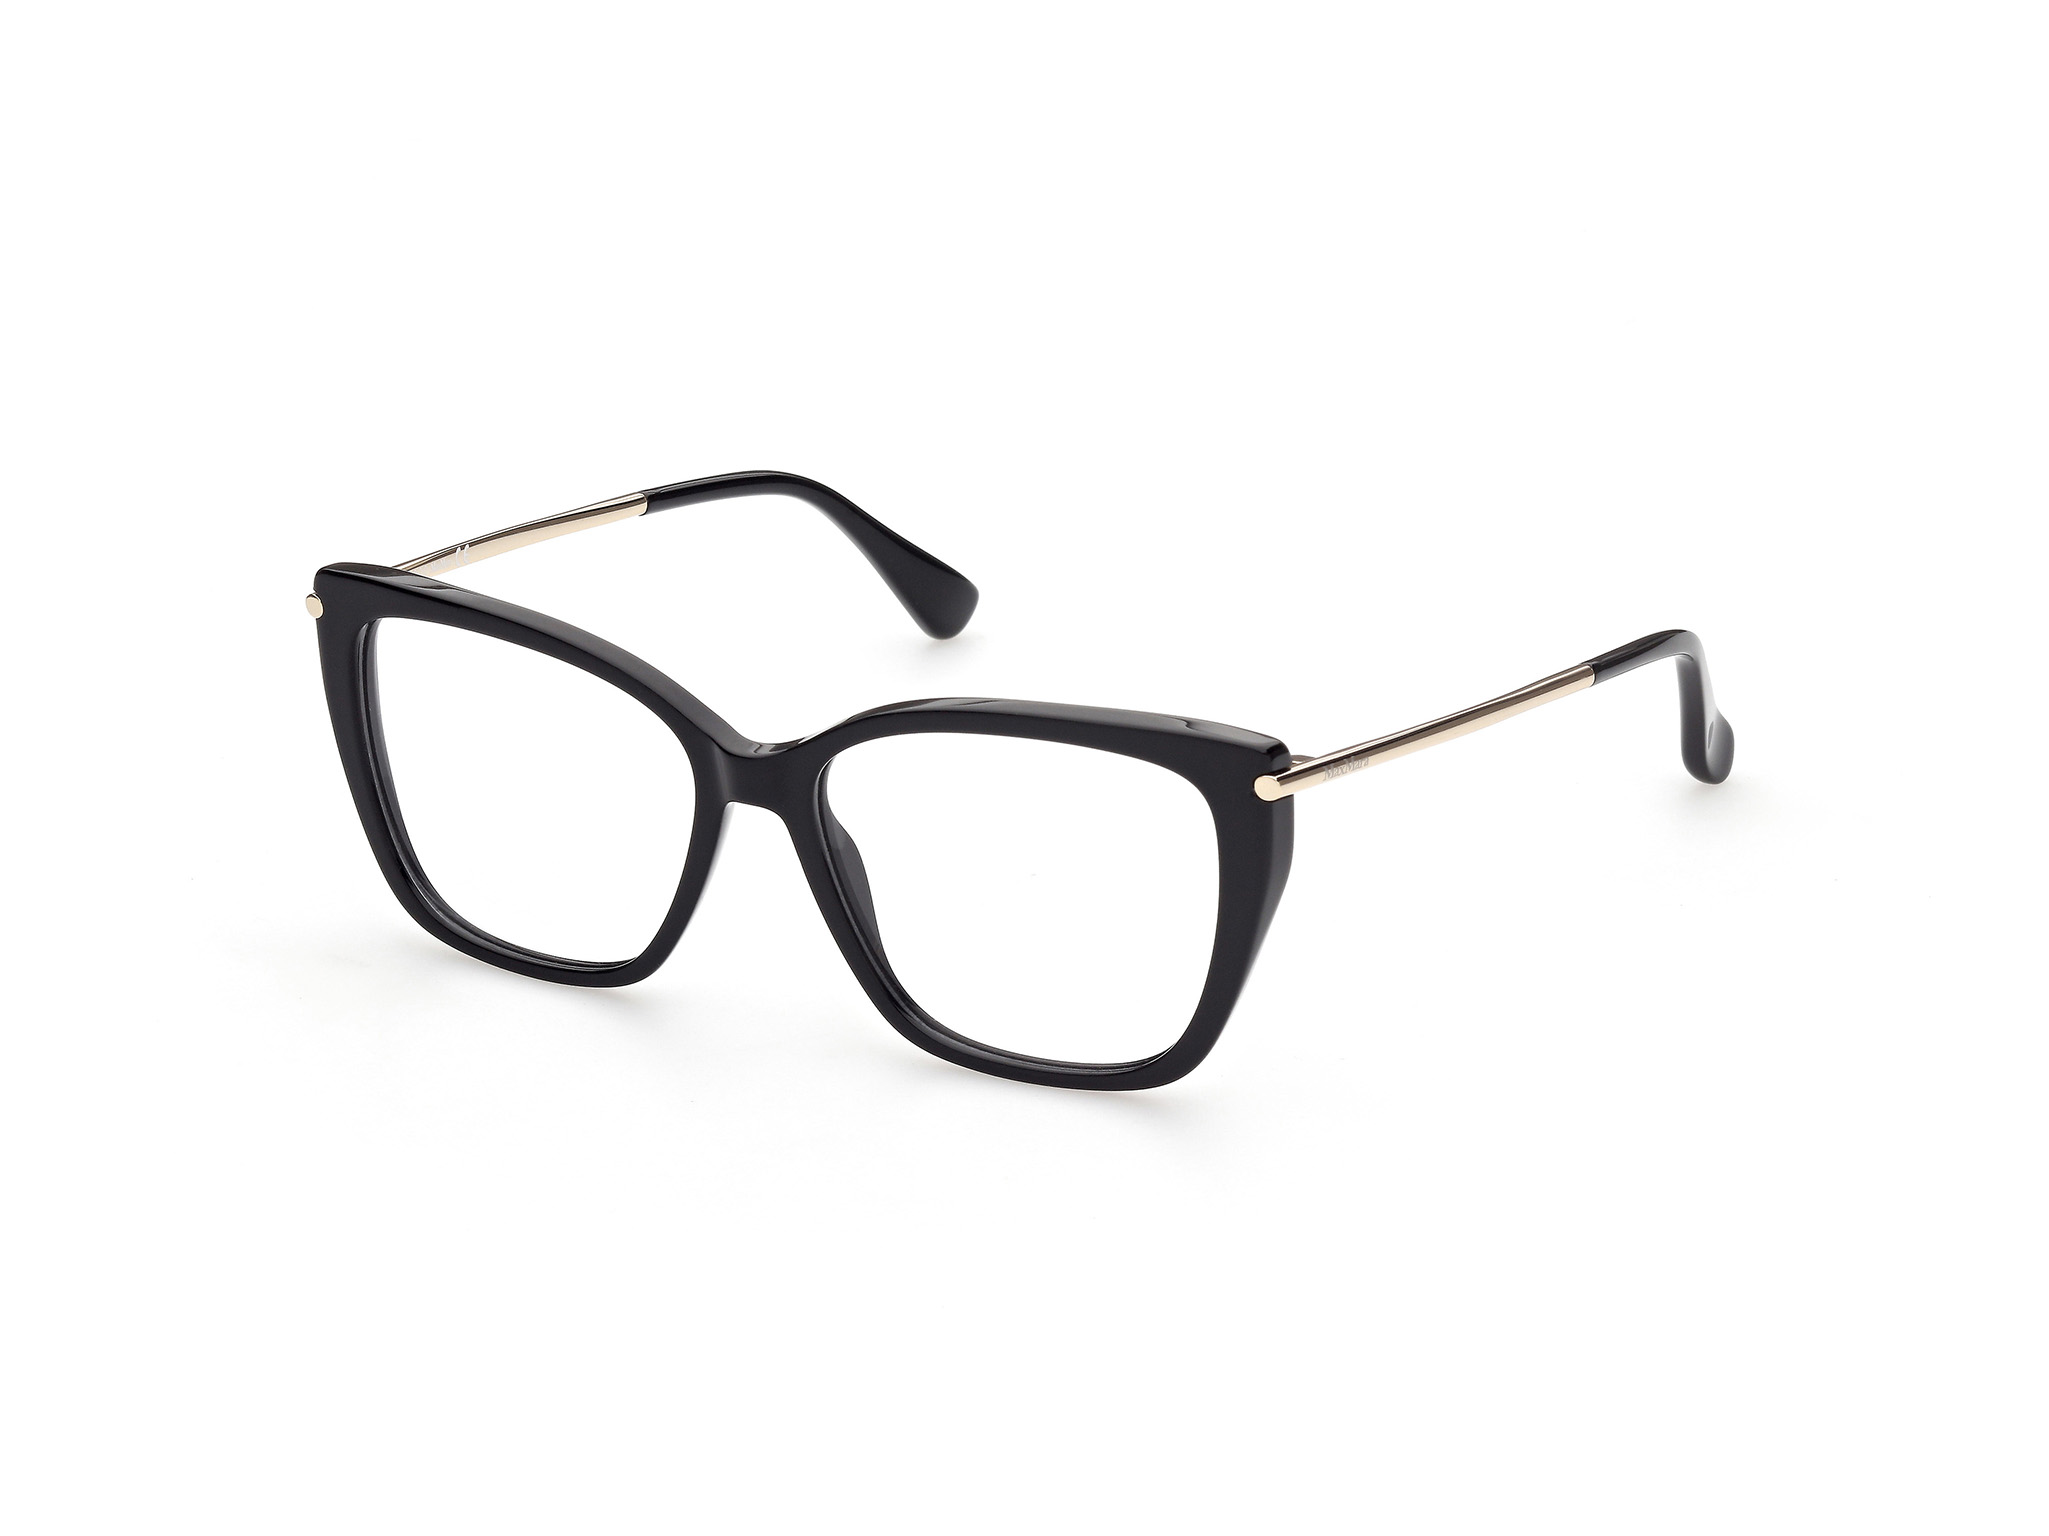 occhiali montatura da vista firmati max mara mm5007 001 neri montature neutri nero occhiale donna quadrati grandi oversize squadrati lenti neutre da vista non graduati nero e oro